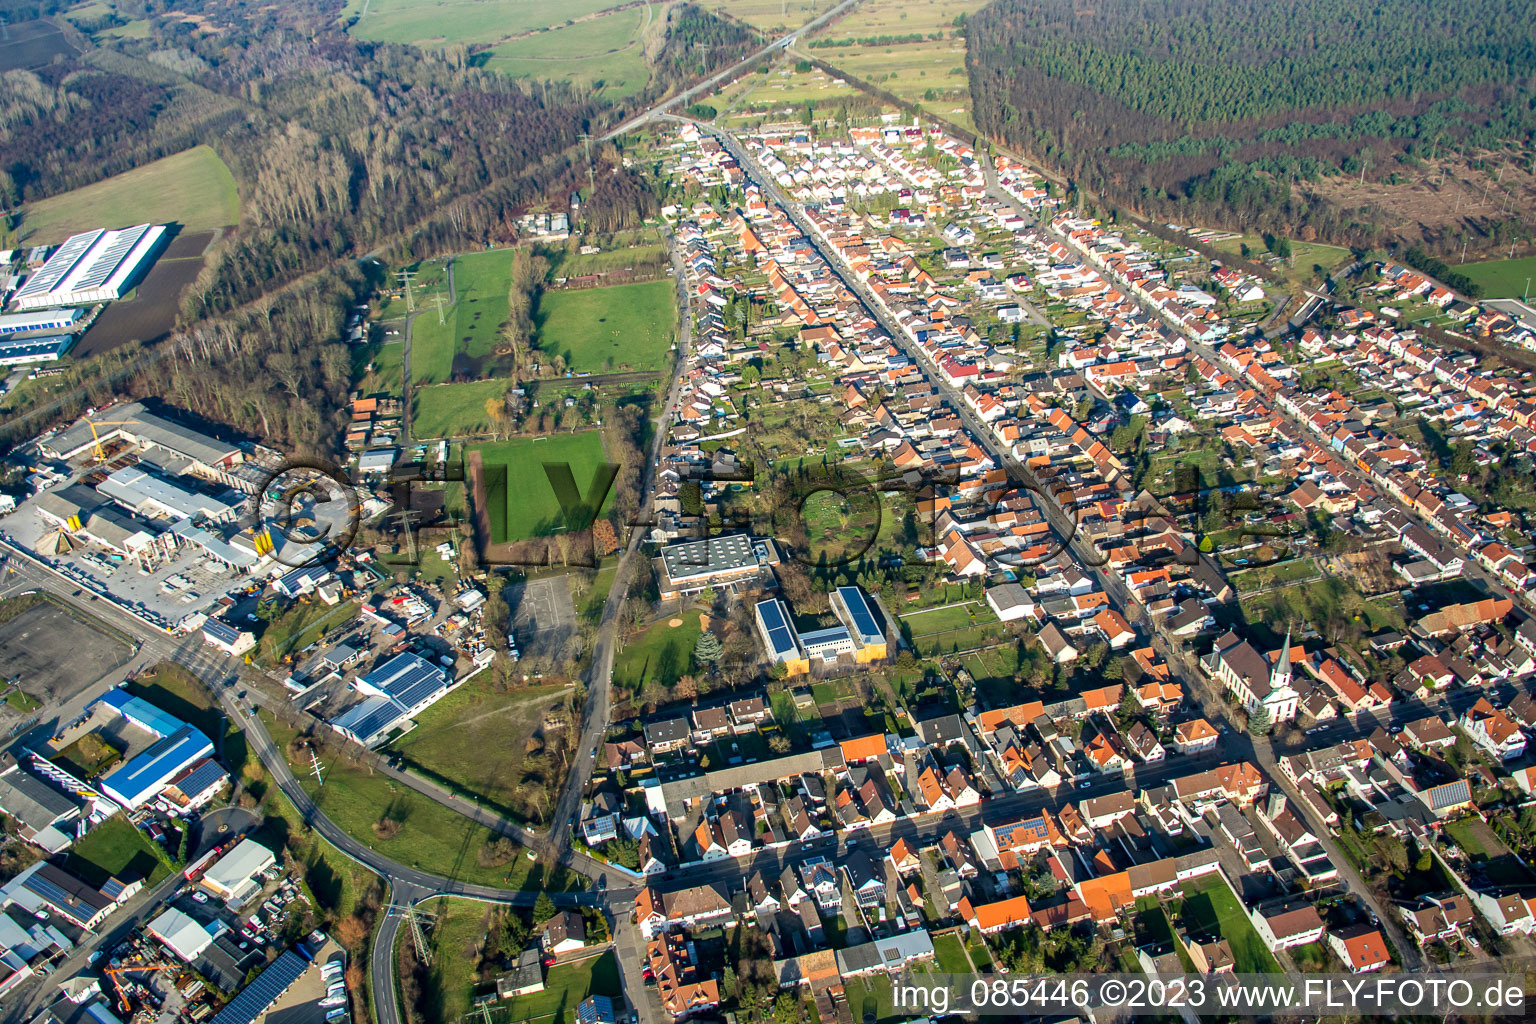 Vue aérienne de Vue des rues et des maisons des quartiers résidentiels à le quartier Huttenheim in Philippsburg dans le département Bade-Wurtemberg, Allemagne